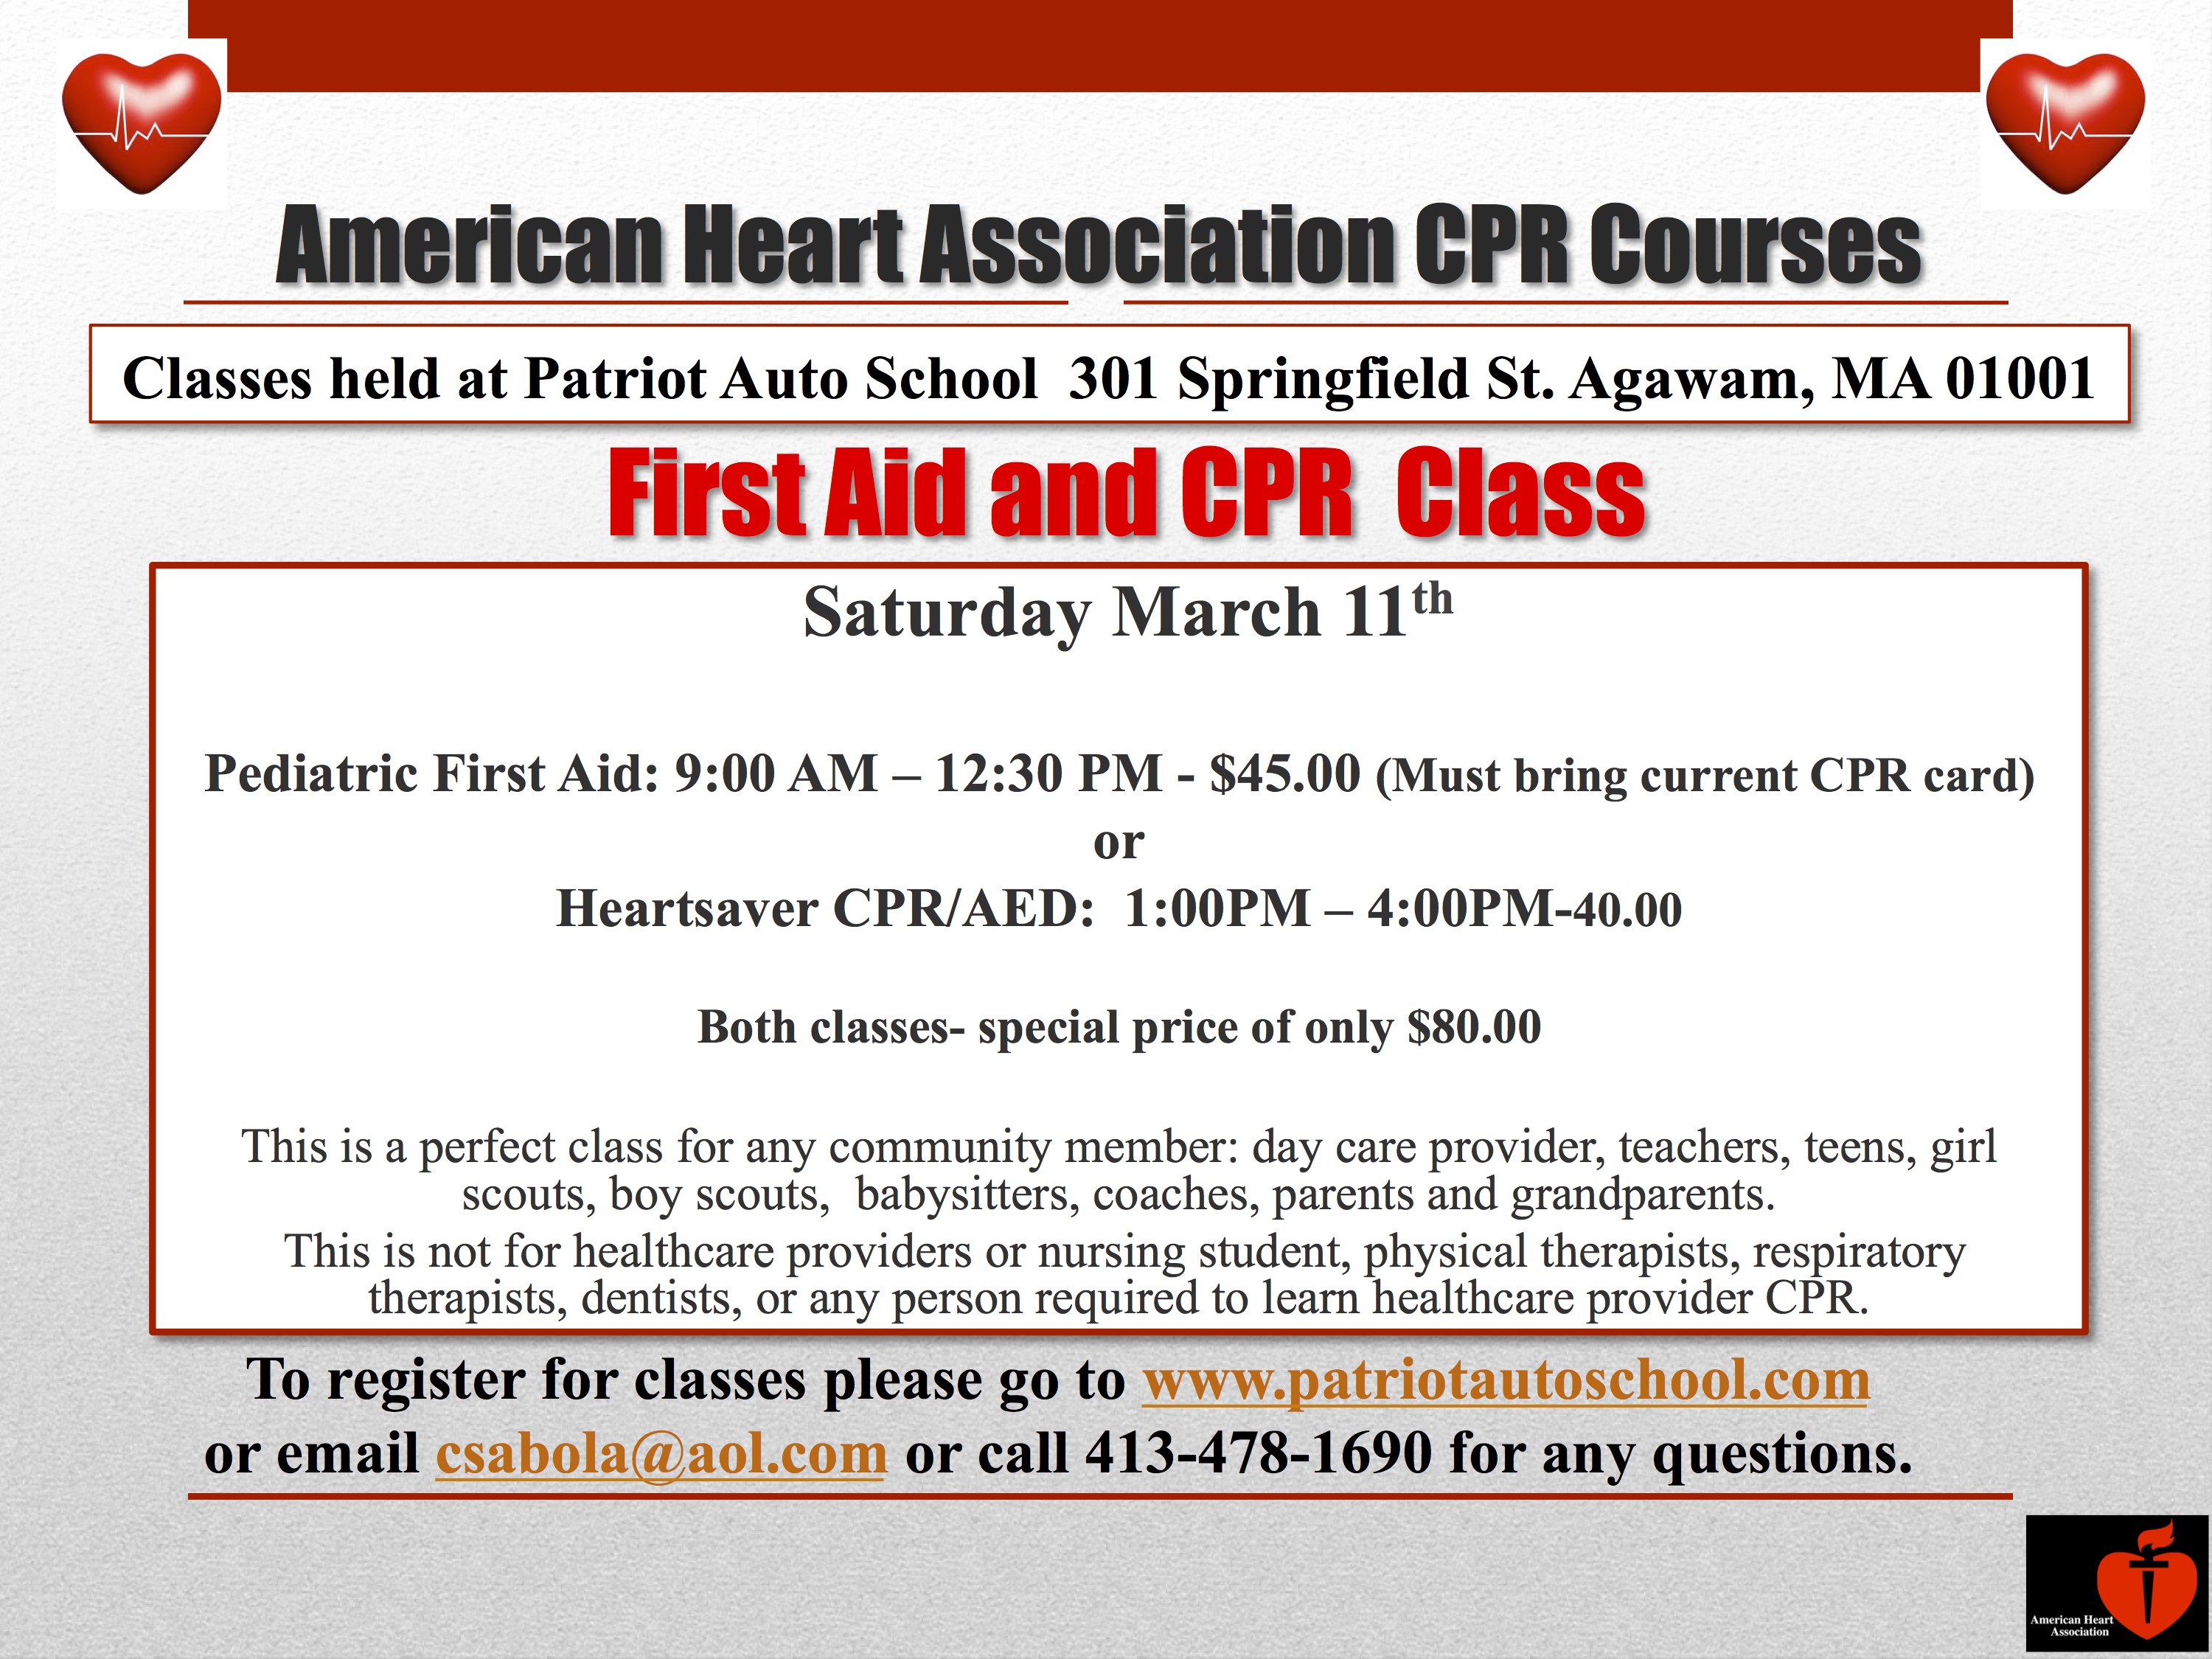 American Heart Association - 